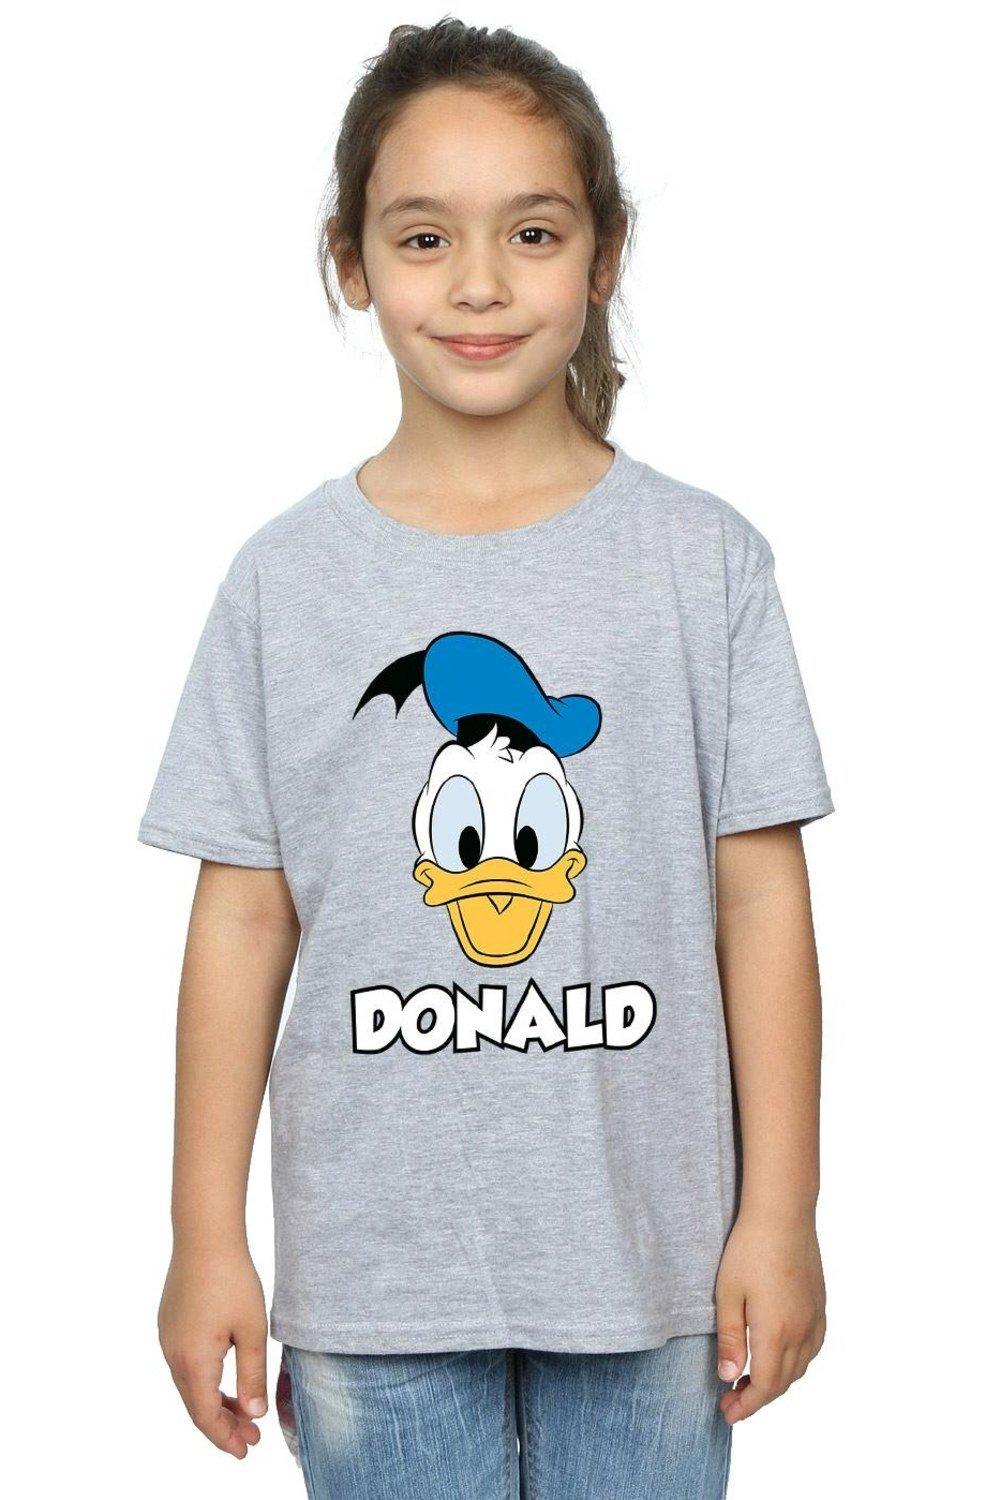 Хлопковая футболка с изображением Дональда Дака Disney, серый картина из страз с изображением дональда дака диснея вышивка картина с животными украшение для дома рождественские подарки для детей